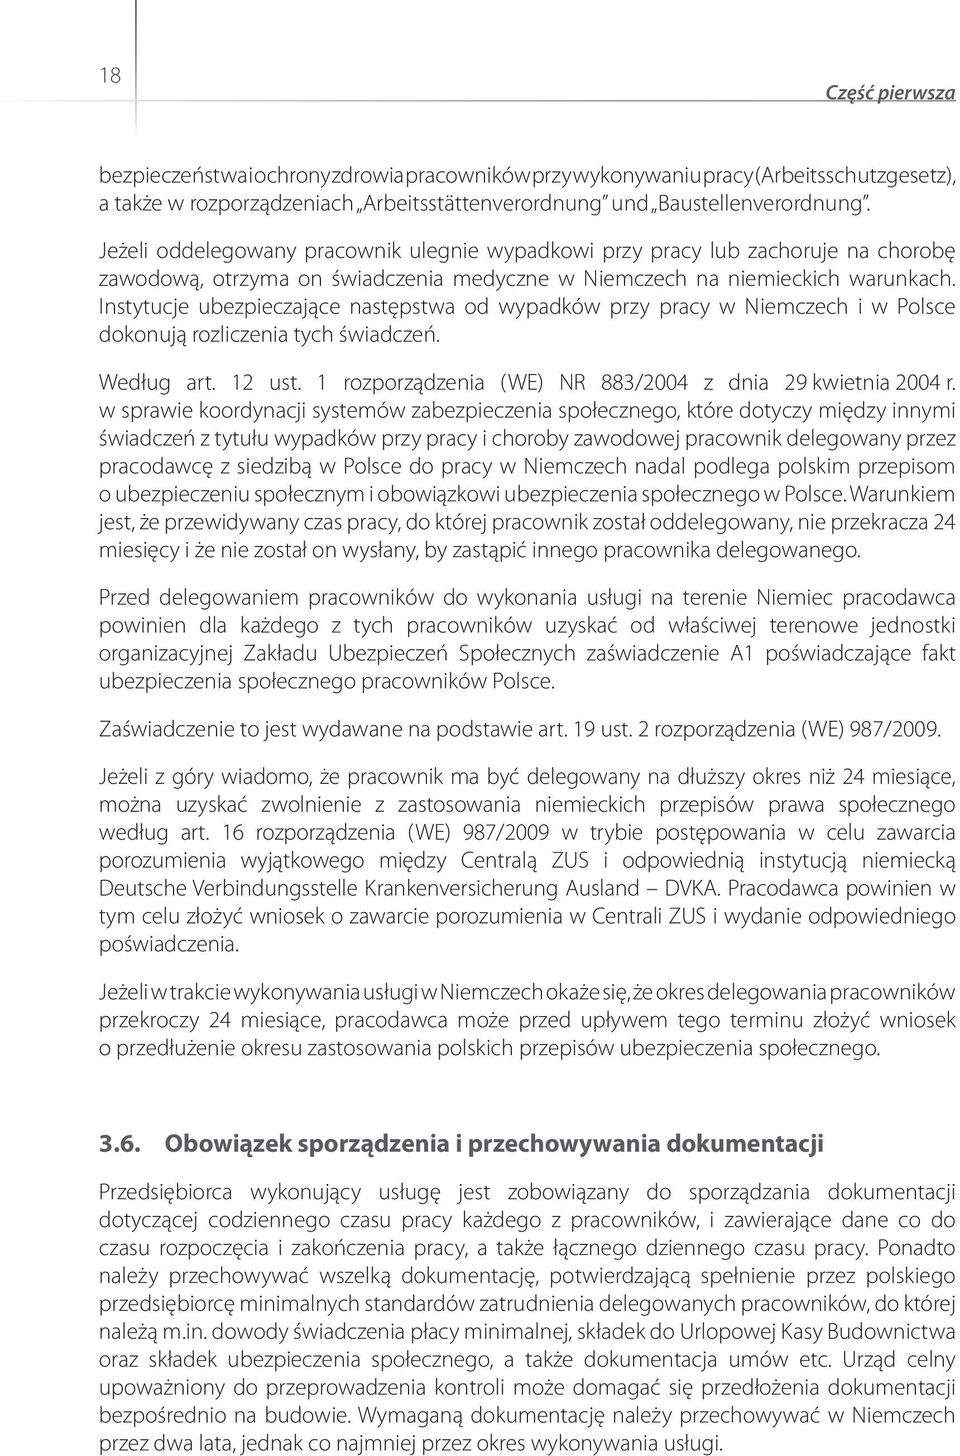 Instytucje ubezpieczające następstwa od wypadków przy pracy w Niemczech i w Polsce dokonują rozliczenia tych świadczeń. Według art. 12 ust. 1 rozporządzenia (WE) NR 883/2004 z dnia 29 kwietnia 2004 r.